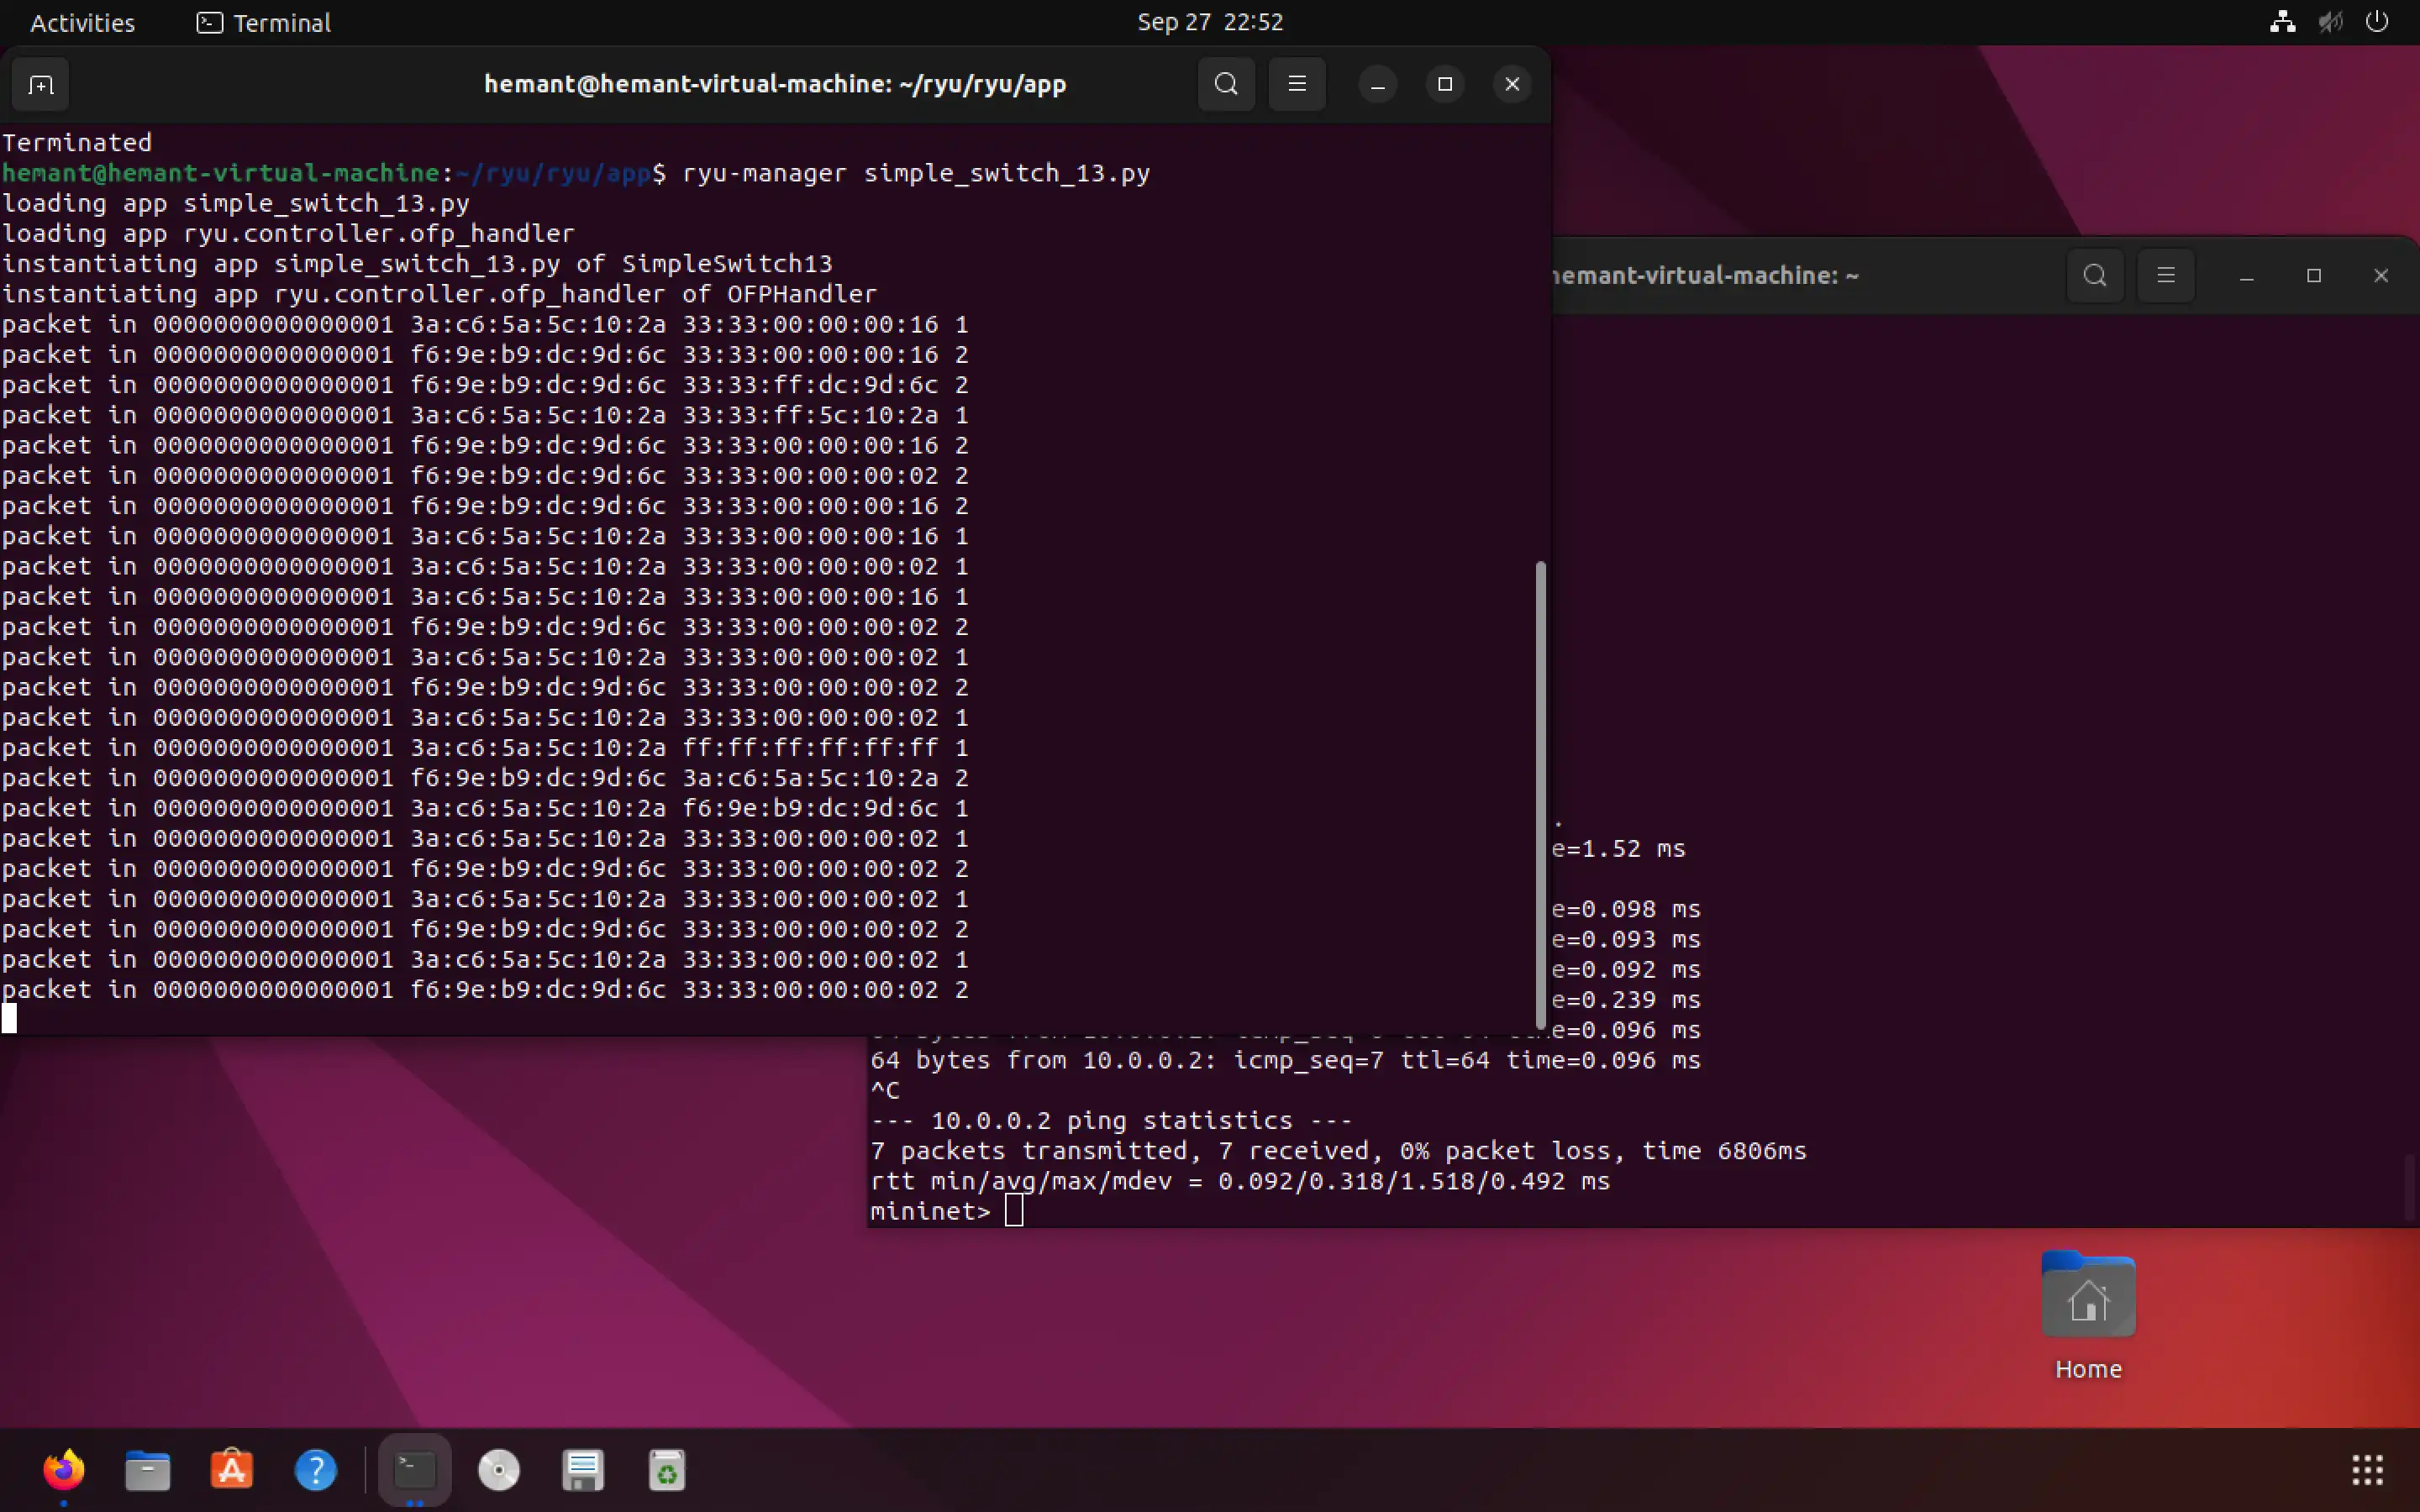 ابزار وب یا برنامه وب ubuntu22.04-minet-ryu را دانلود کنید